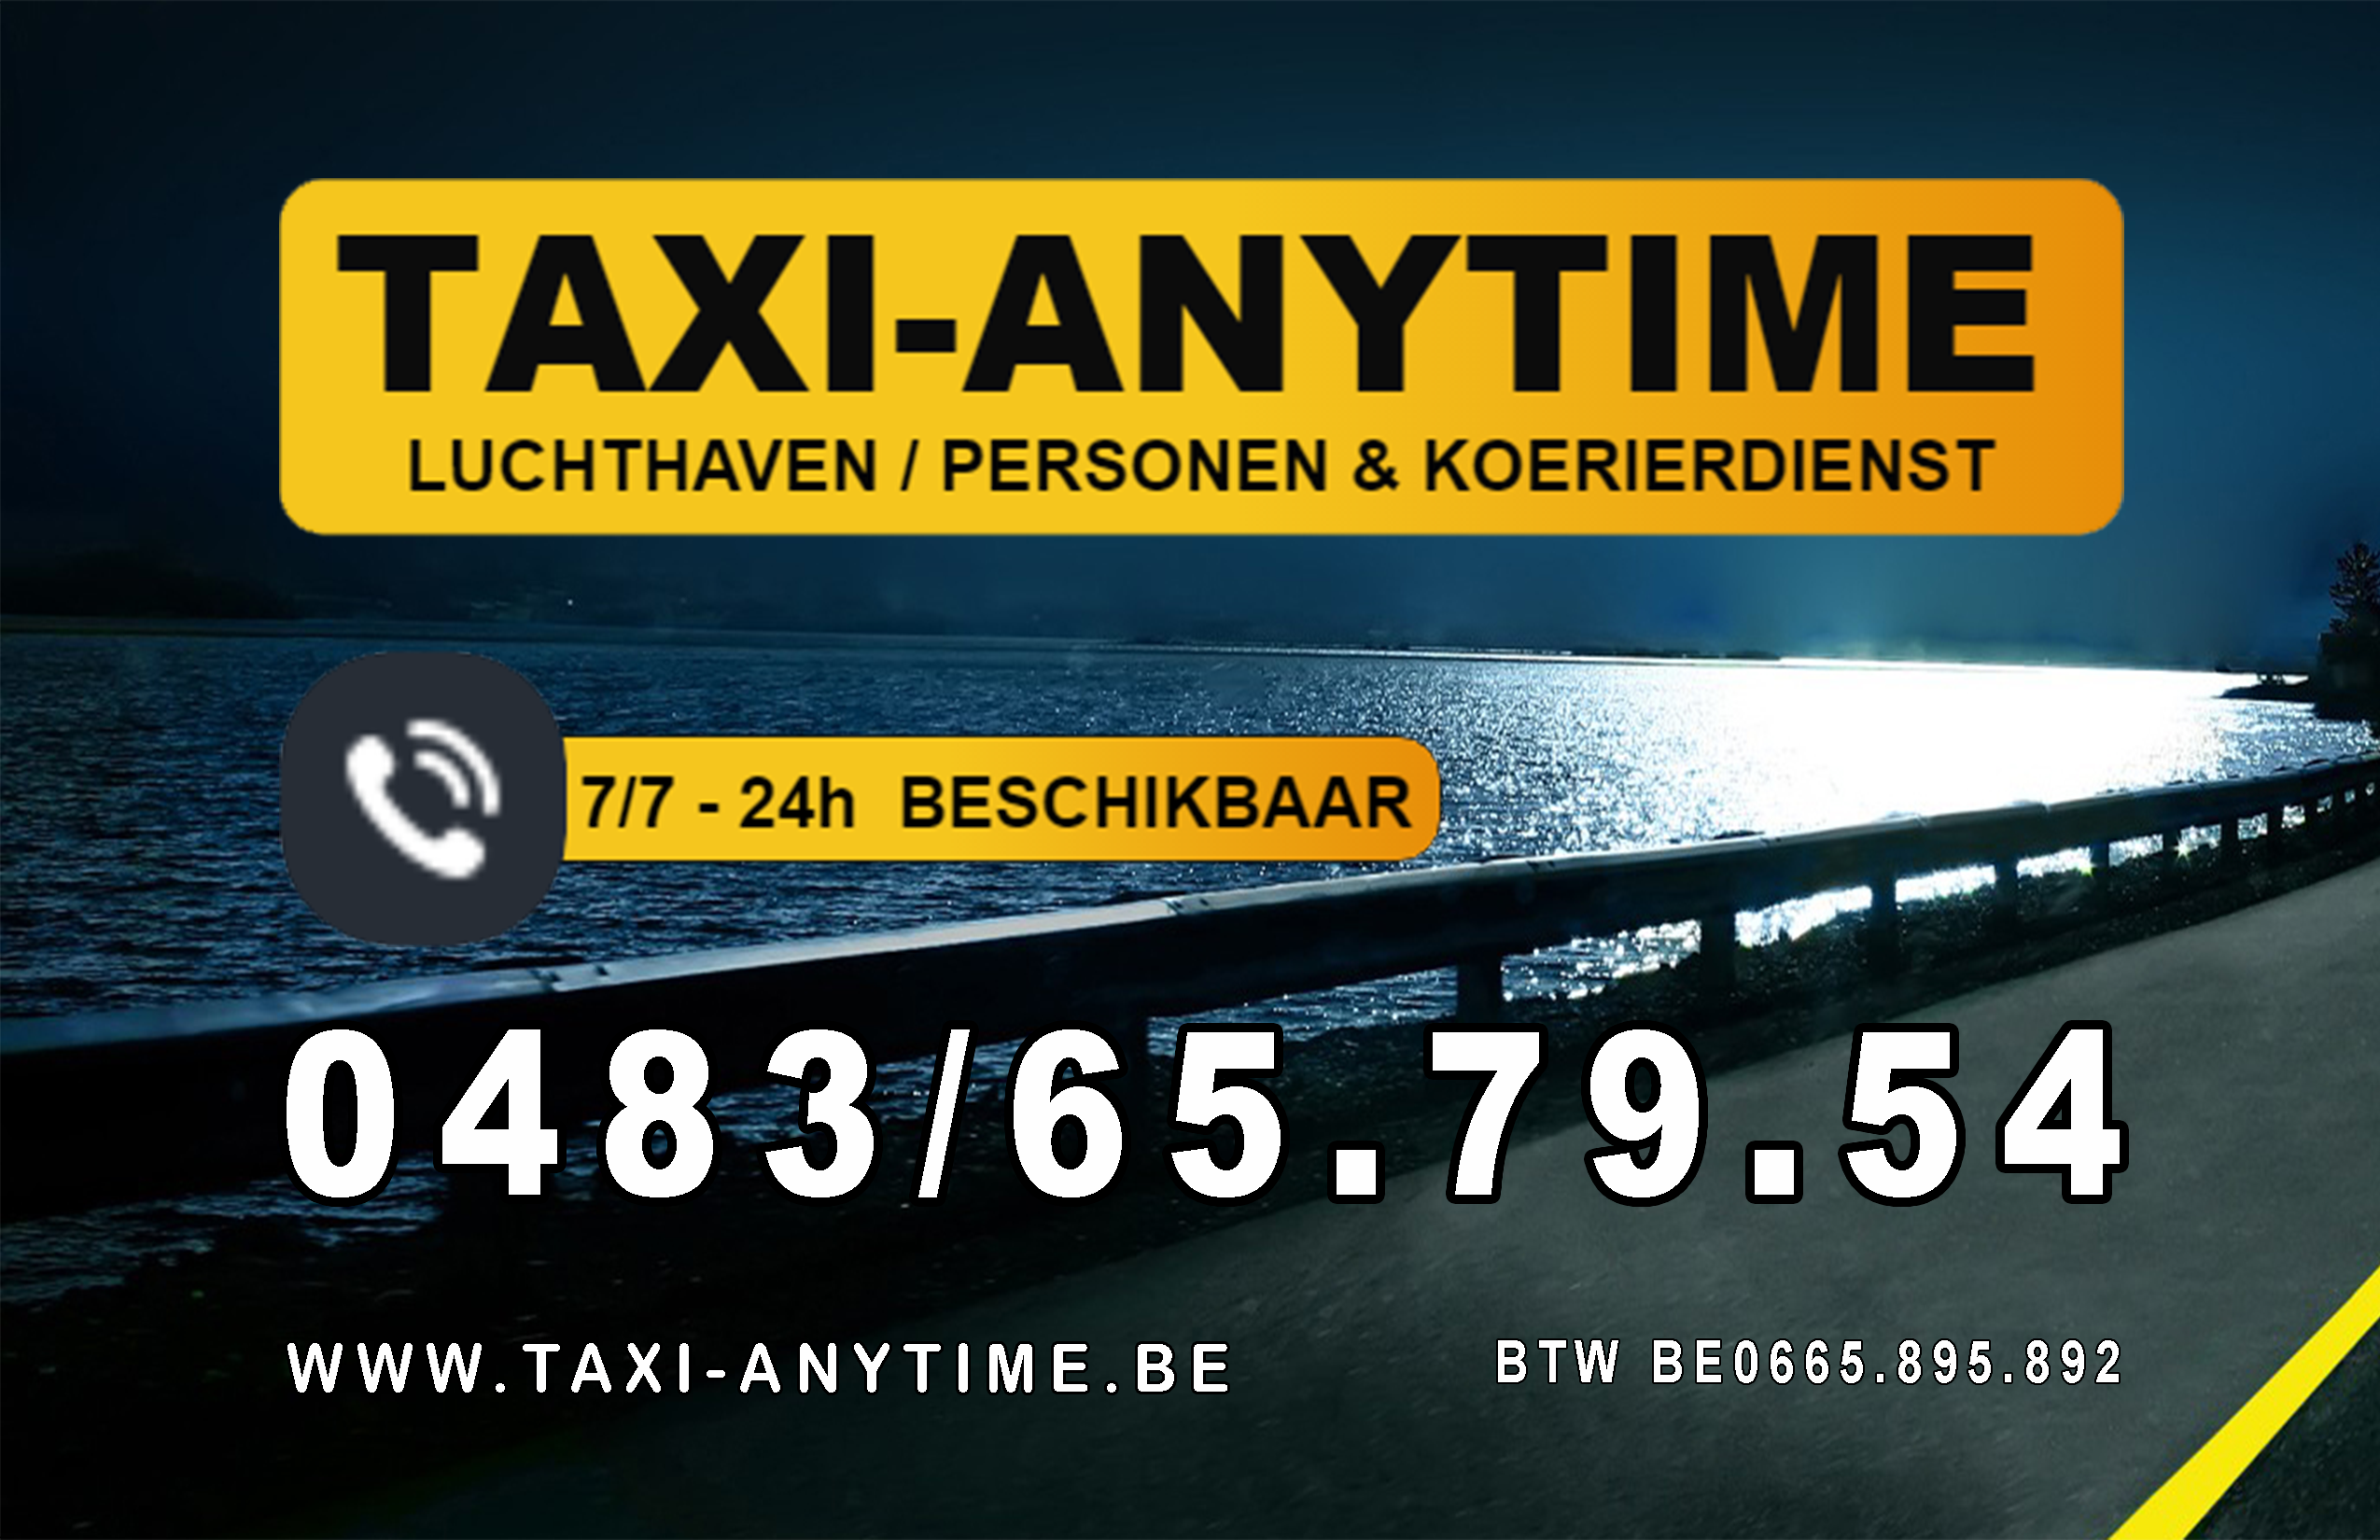 taxibedrijven Antwerpen Taxi-anytime